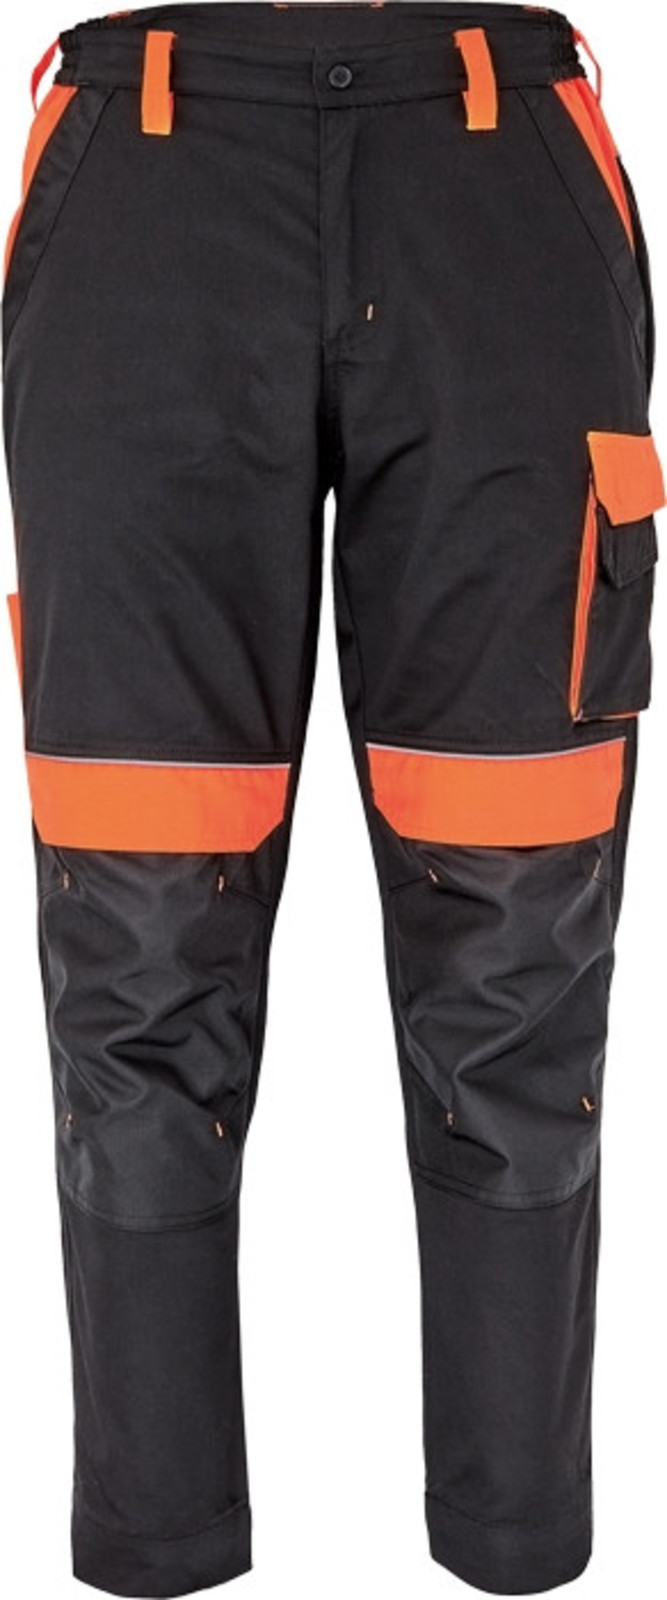 Pracovné nohavice Cerva Max Vivo pánske  - veľkosť: 68, farba: čierna/oranžová